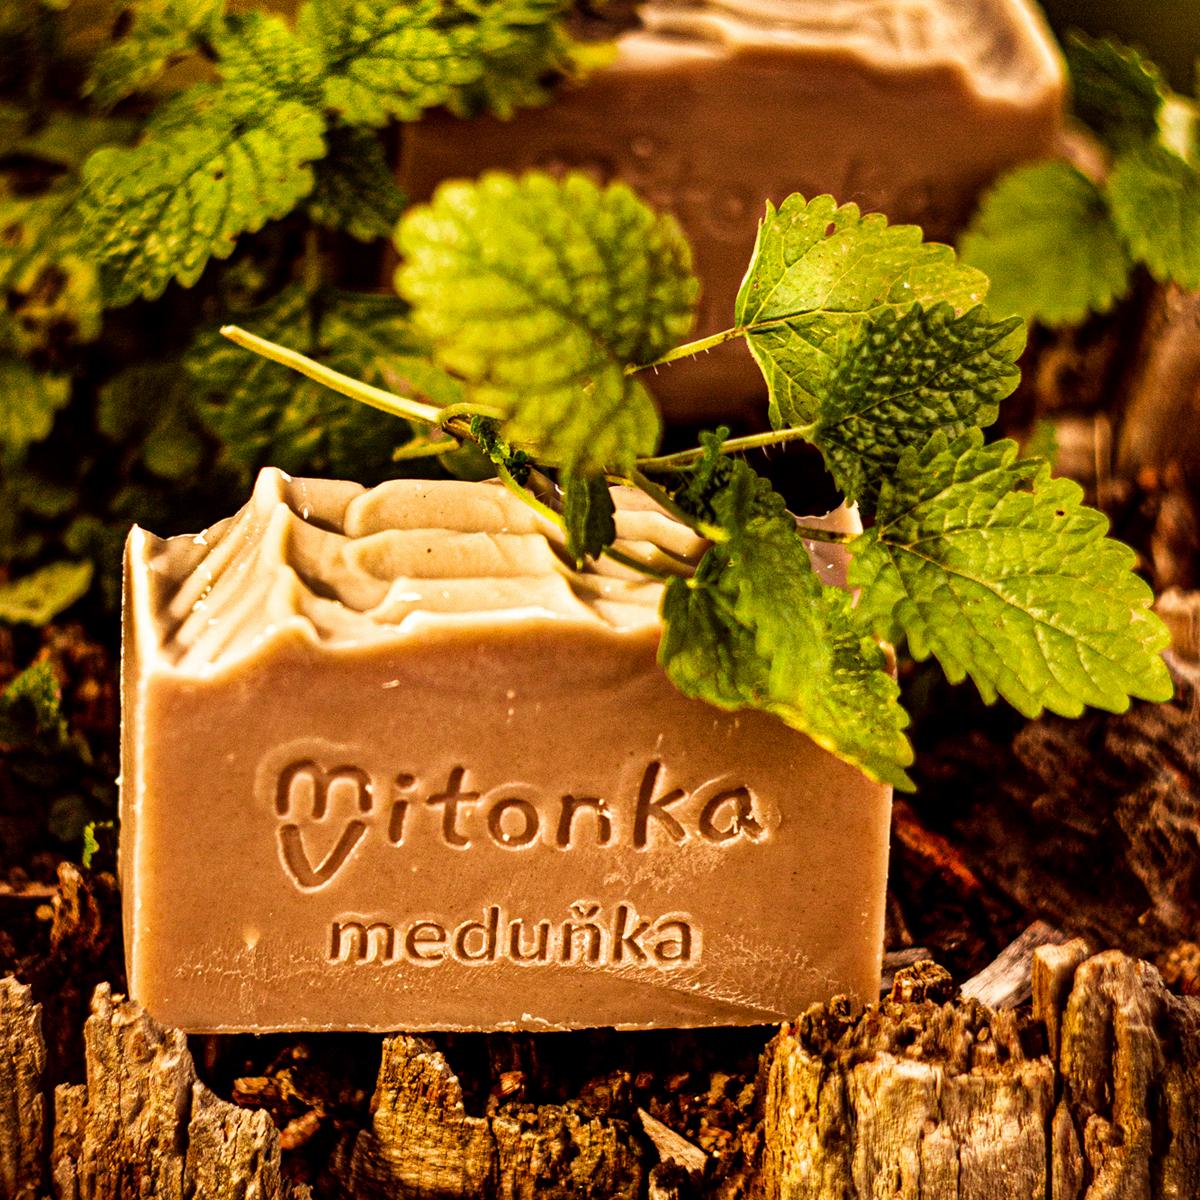 české mýdlo - mýdlárna Mitonka měduňkové mýdlo